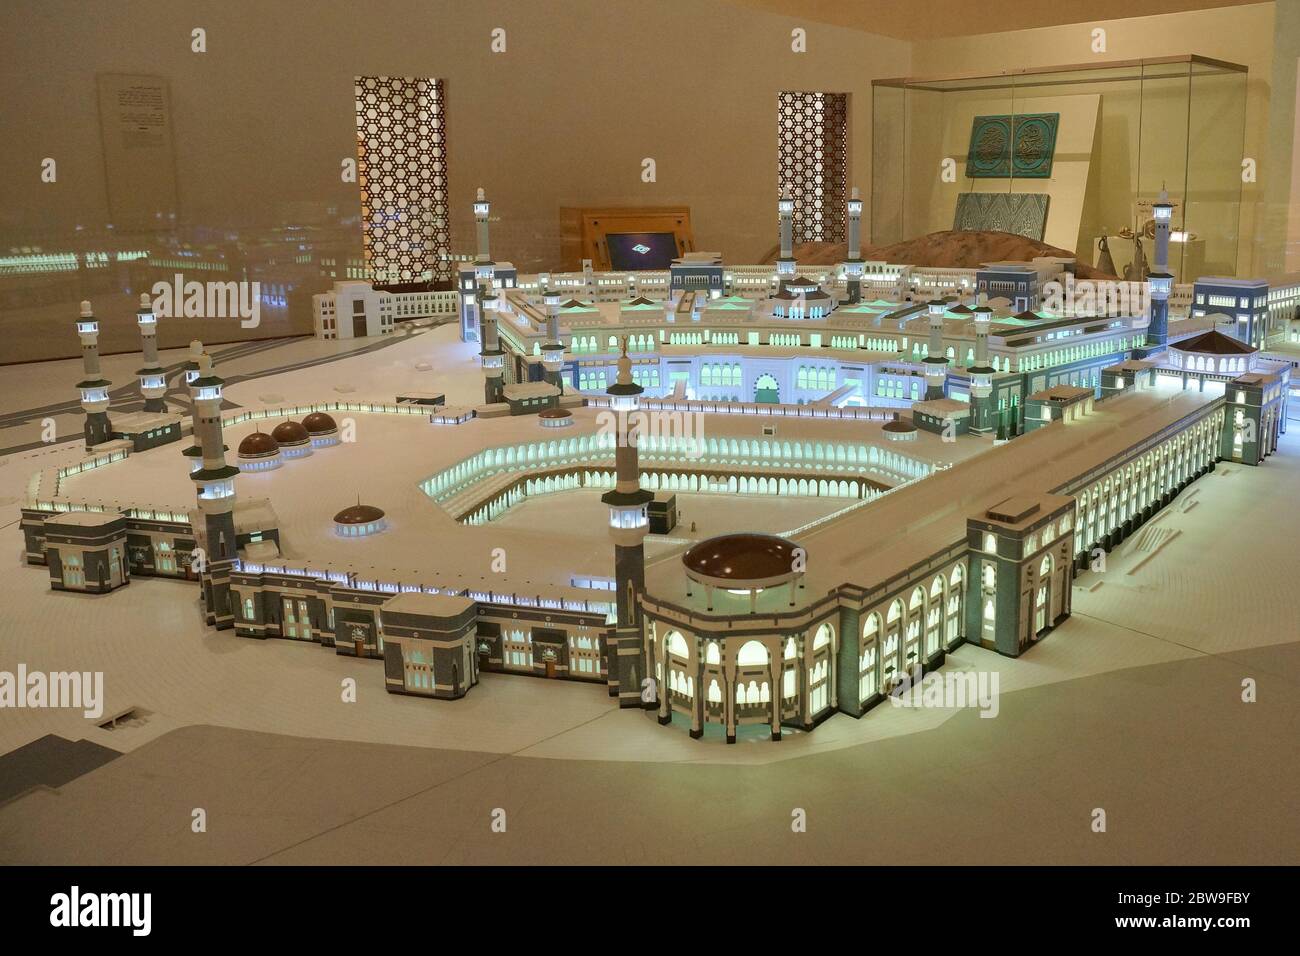 Modello in scala della Grande Mecca di Mecca o Makkah esposto al Museo Nazionale di Riyadh, Regno dell'Arabia Saudita. Foto scattata il 9 agosto 2017. Foto Stock